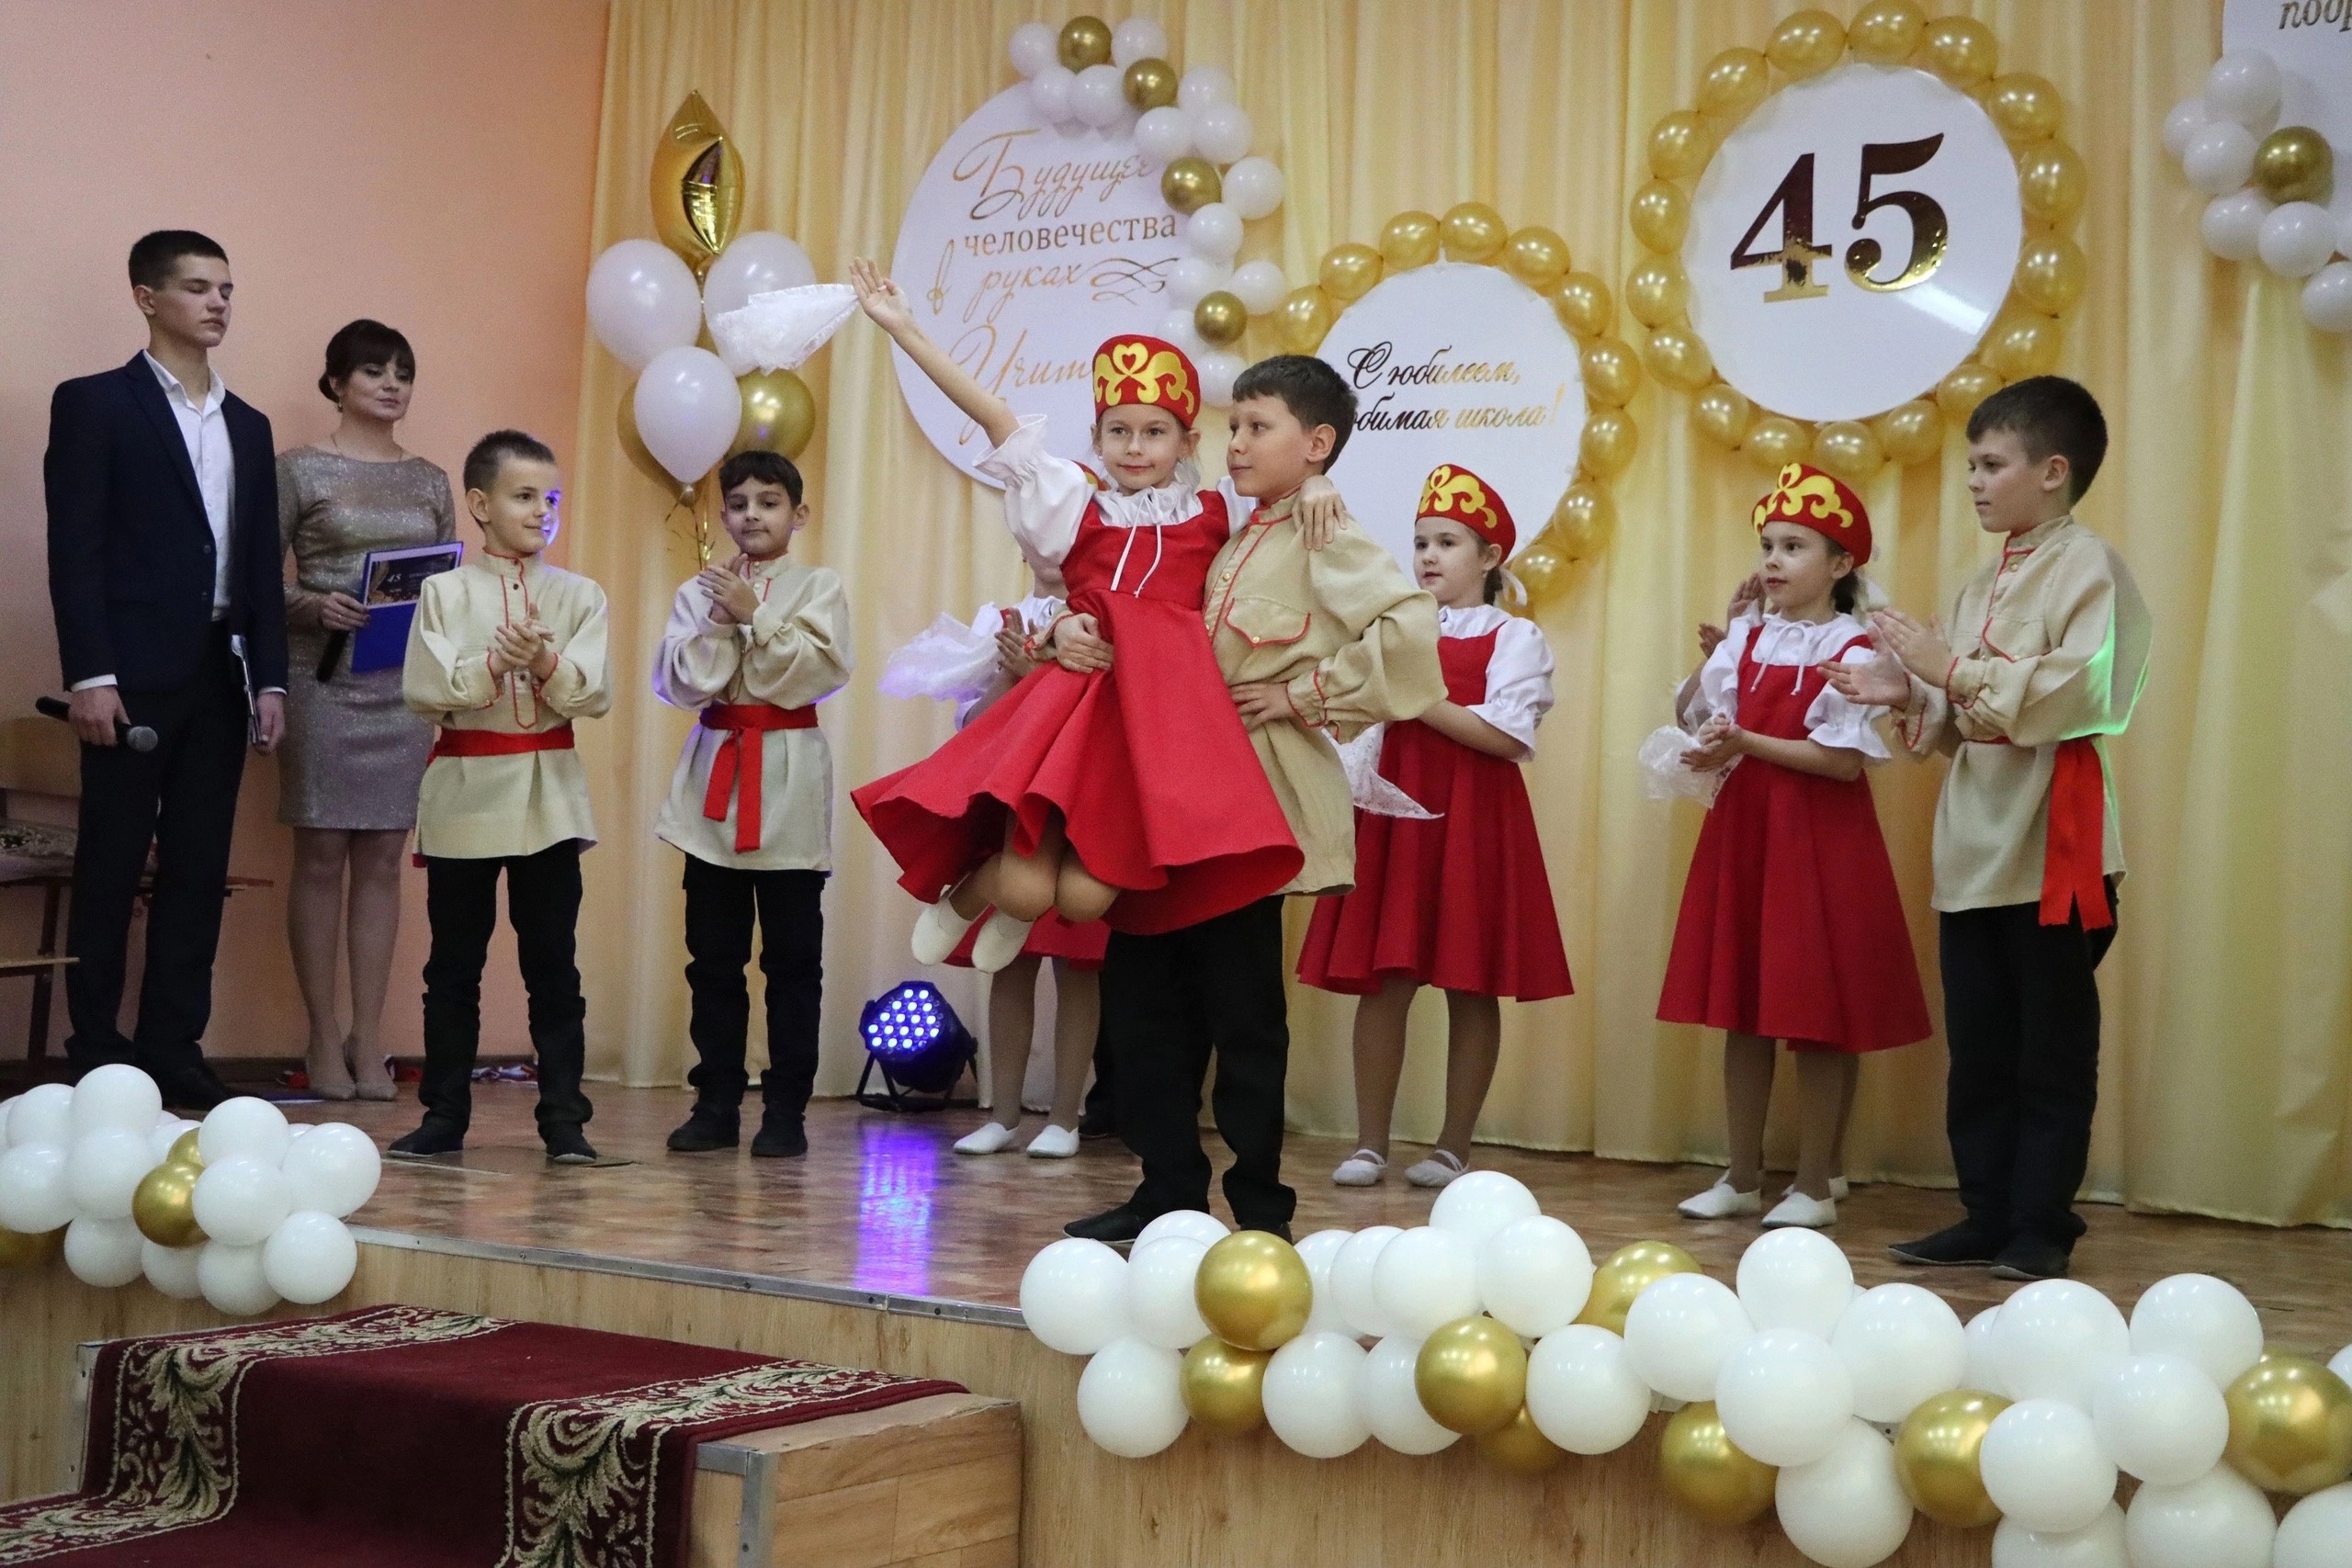 Матвеево-Курганская школа №3 отметила свой 45-летний юбилей